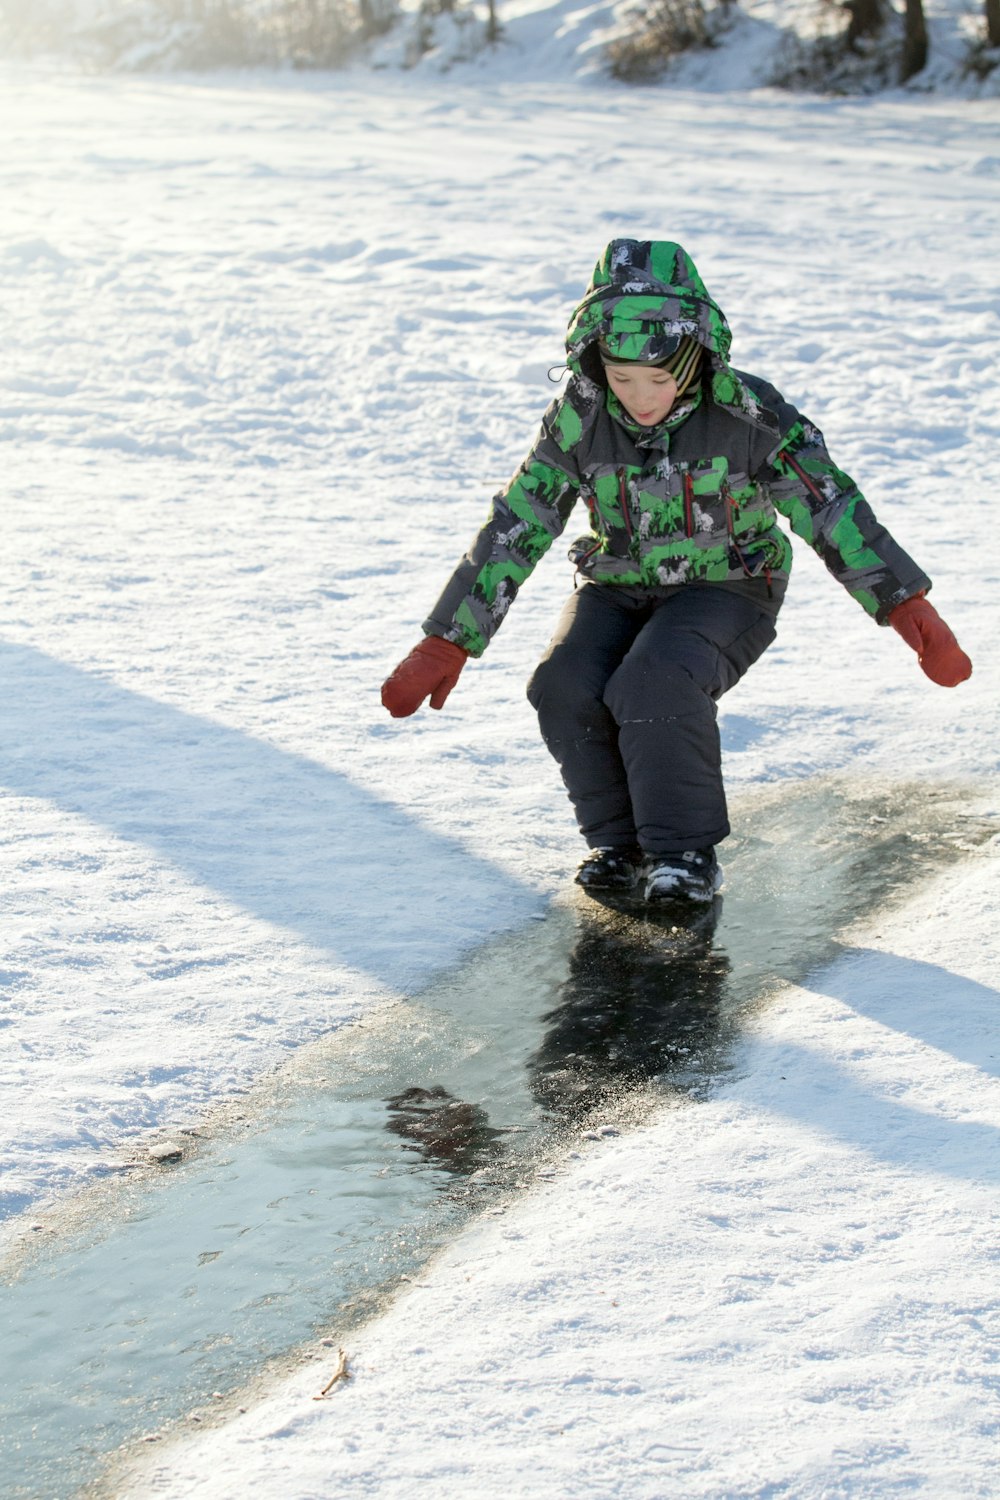 Eine Person, die mit einem Snowboard einen schneebedeckten Hang hinunterfährt